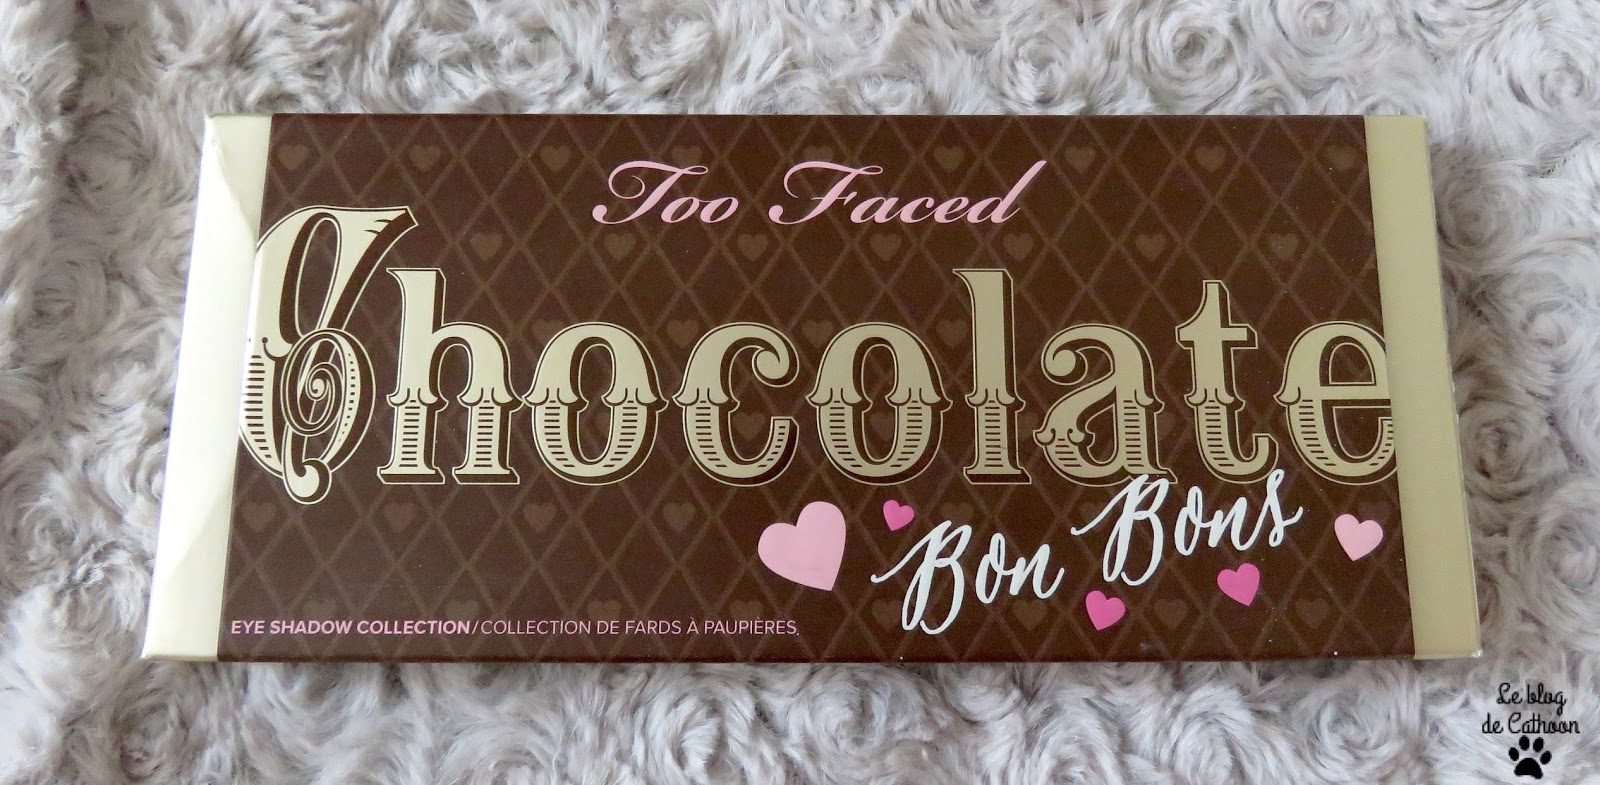 Chocolate Bon Bon de Too Faced